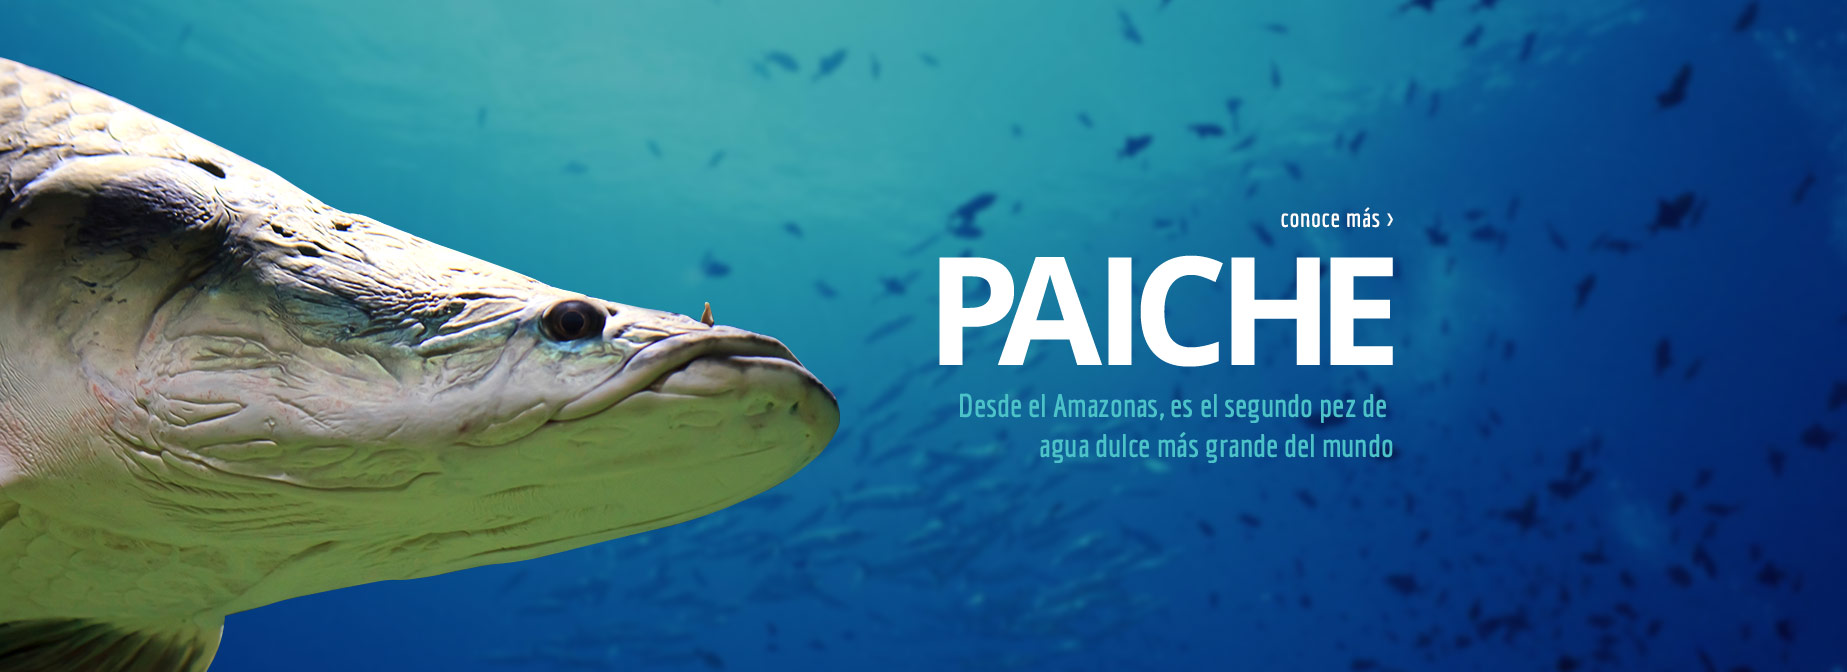 PAICHE - Desde el Amazonas, es el segundo pez de agua dulce más grande del mundo